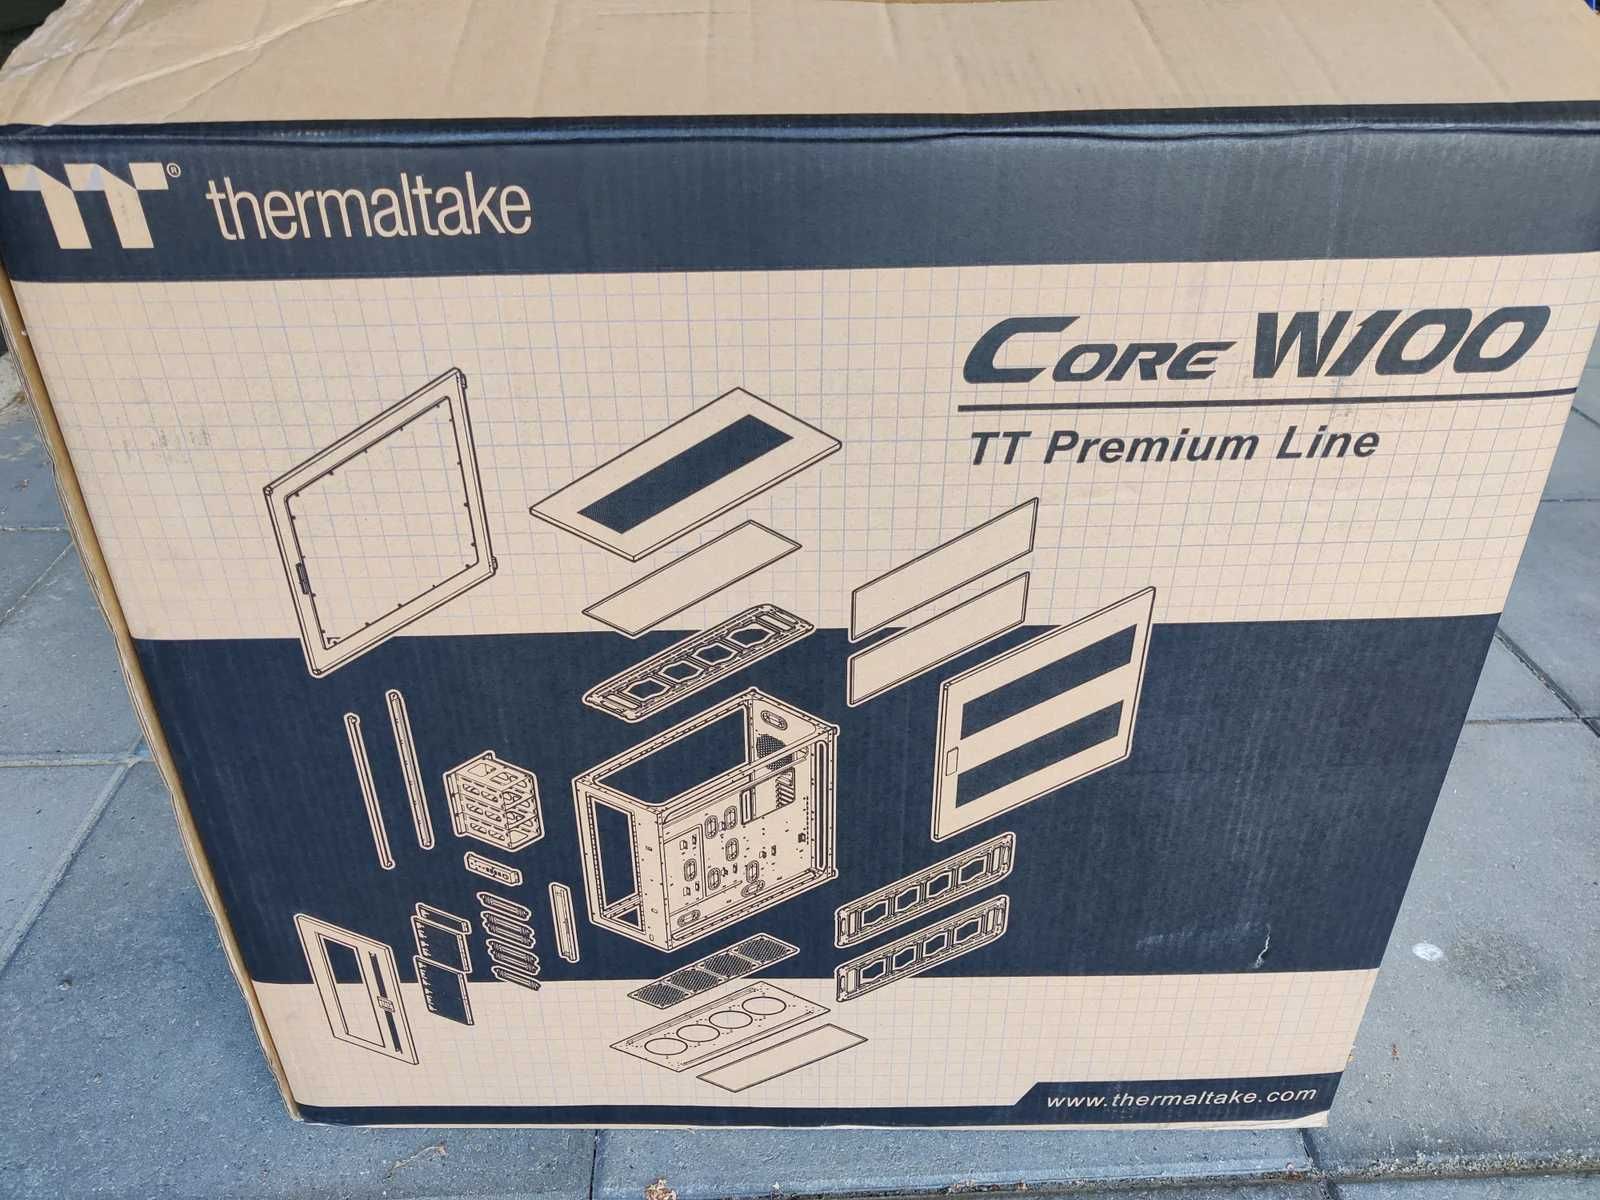 Sprzedam obudowę Thermaltake Core W100